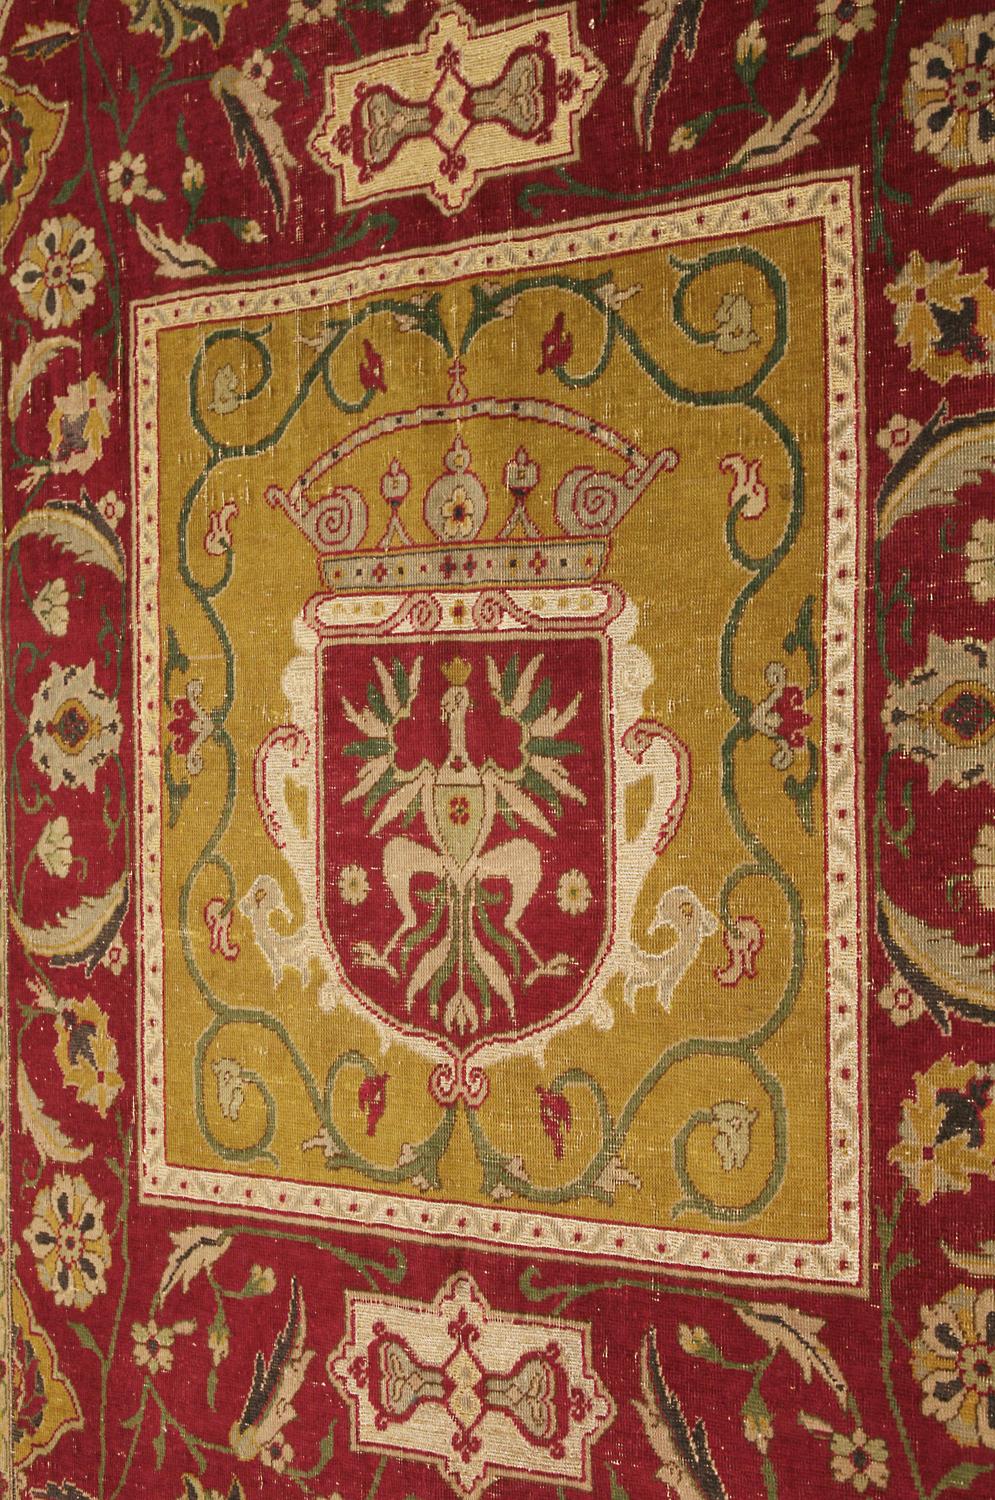 Dieser antike indische Polonaise-Teppich (Tudok ?) aus Wolle und Metall ist ein Kunstwerk! Die verschlungenen Muster und schönen Farben verleihen jedem Raum Eleganz und Stil. Es verfügt auch über ein zentrales Medaillon, das Wappen darstellen